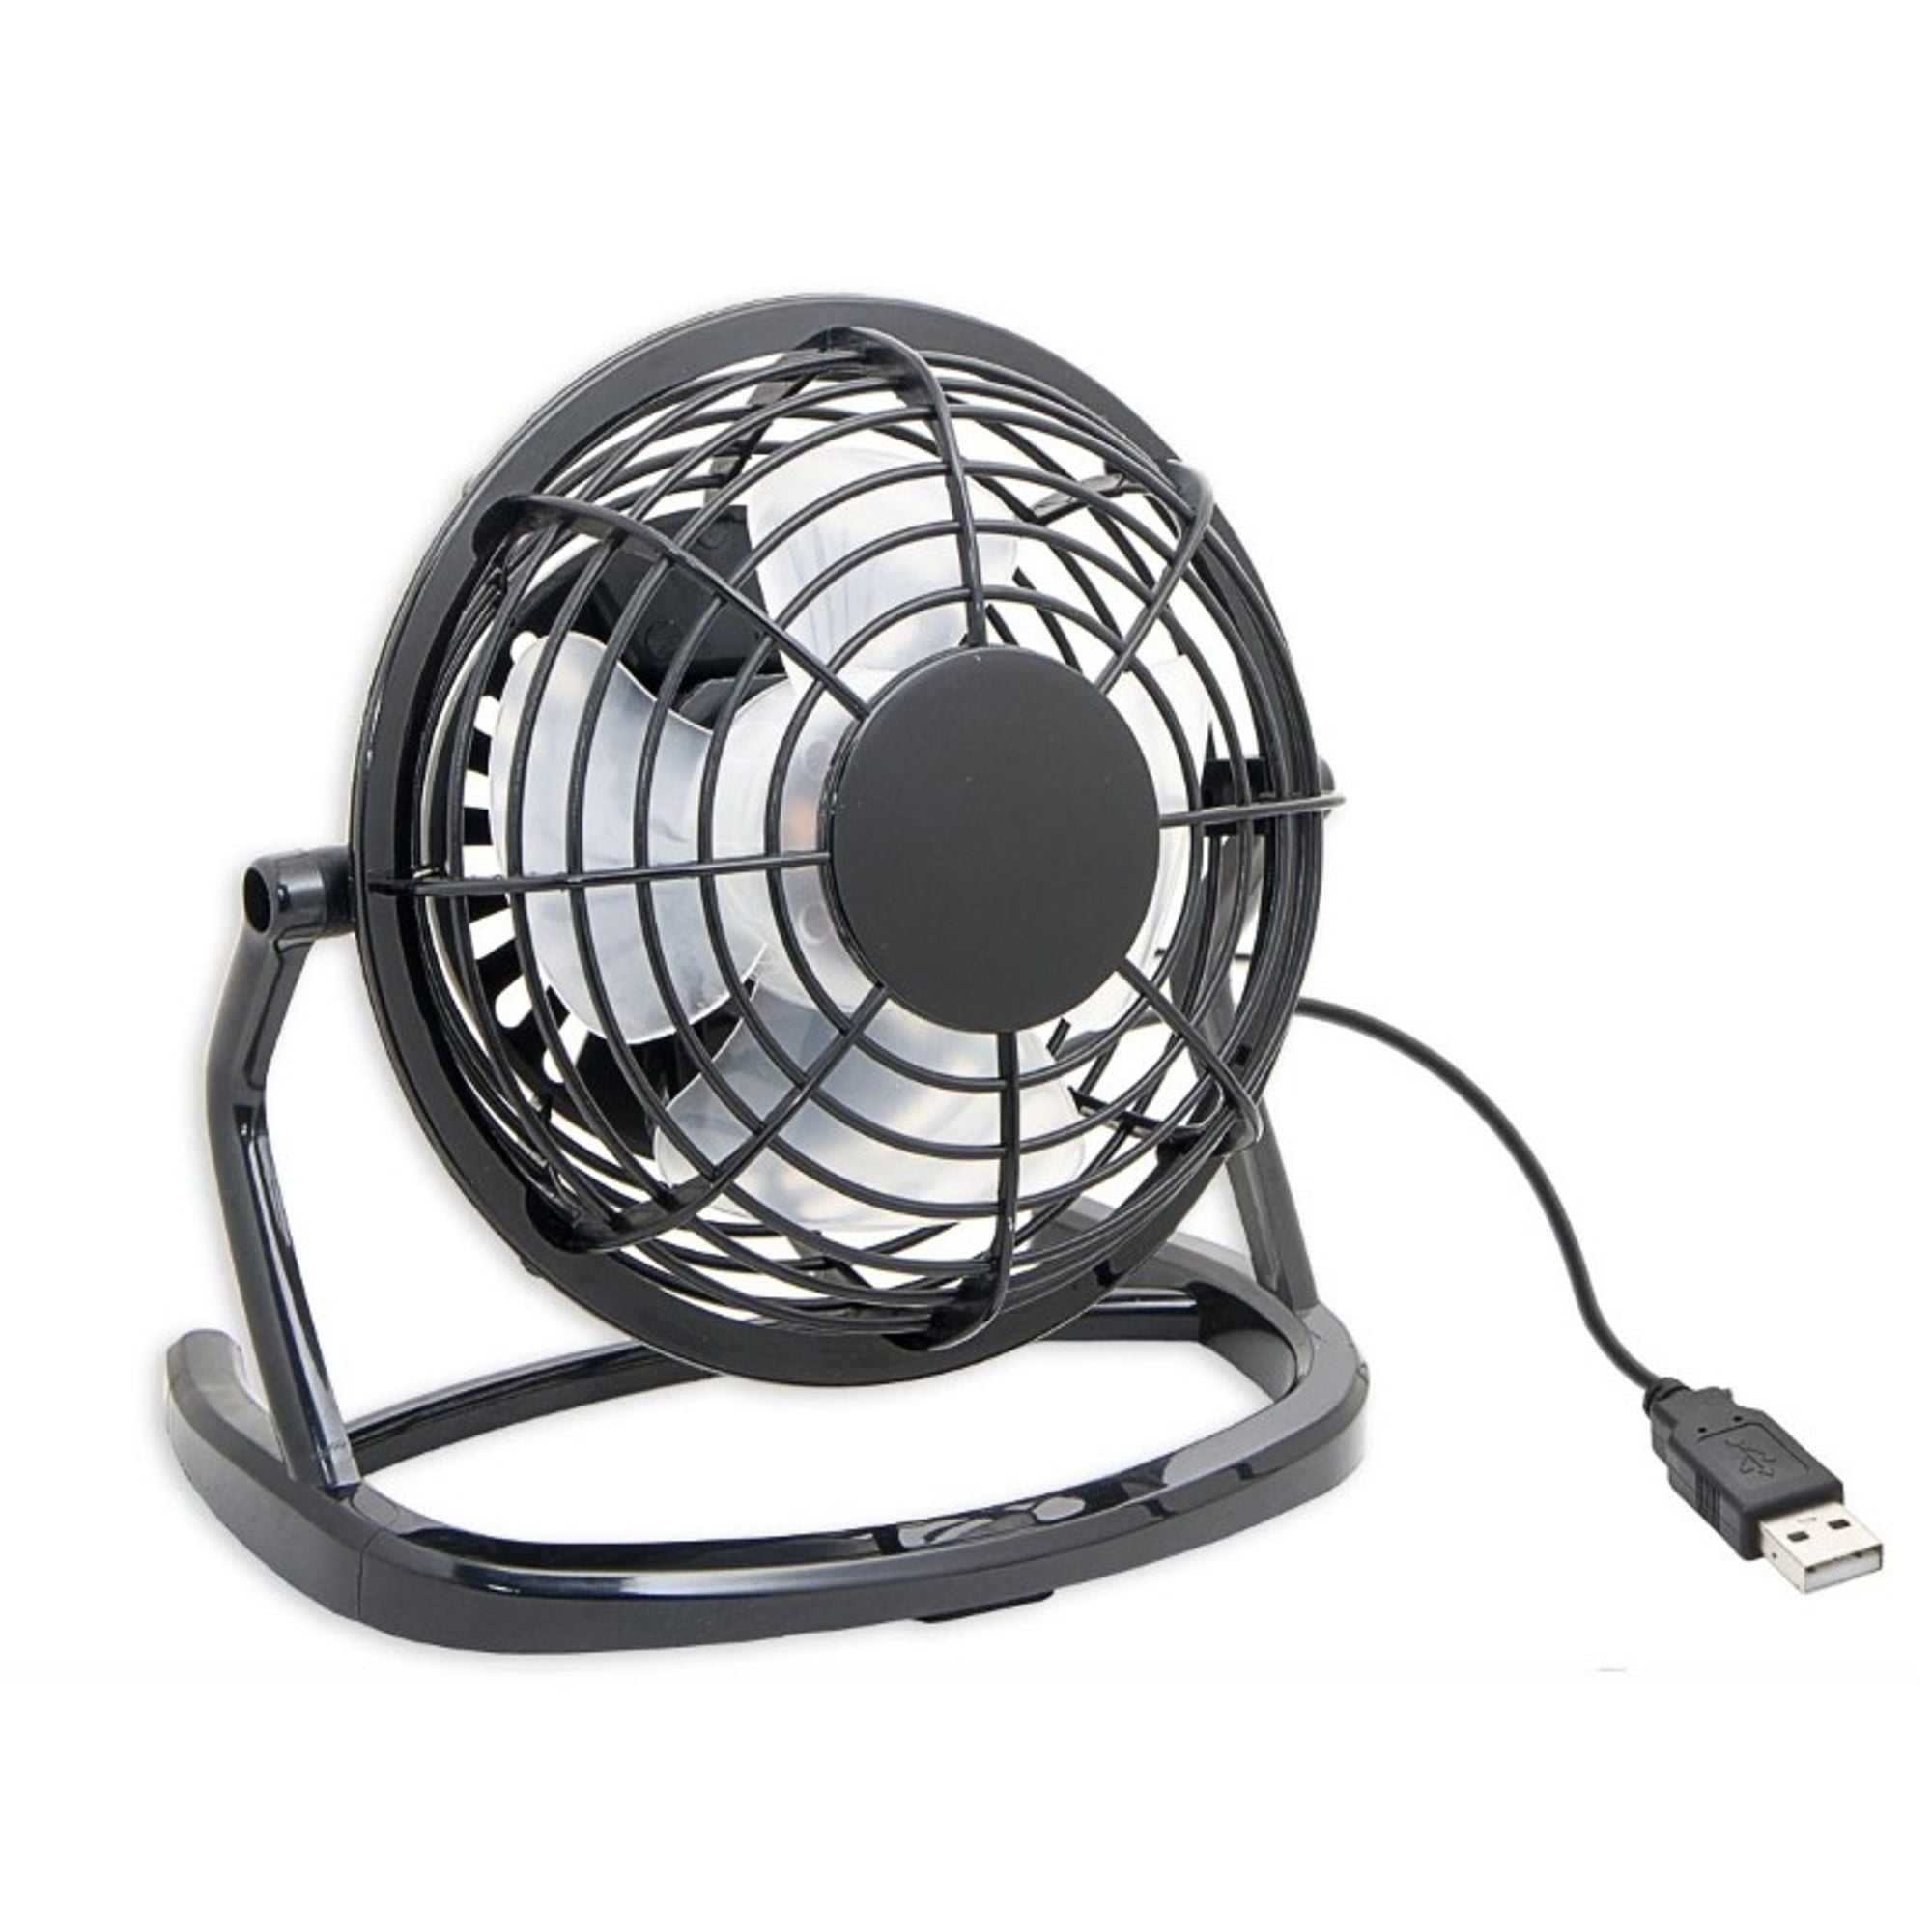 USB Clip Fan Xrt-688 Creative Personality USB Clip Fan Mini Charging Desktop Student Fan Summer Portable Small Fan